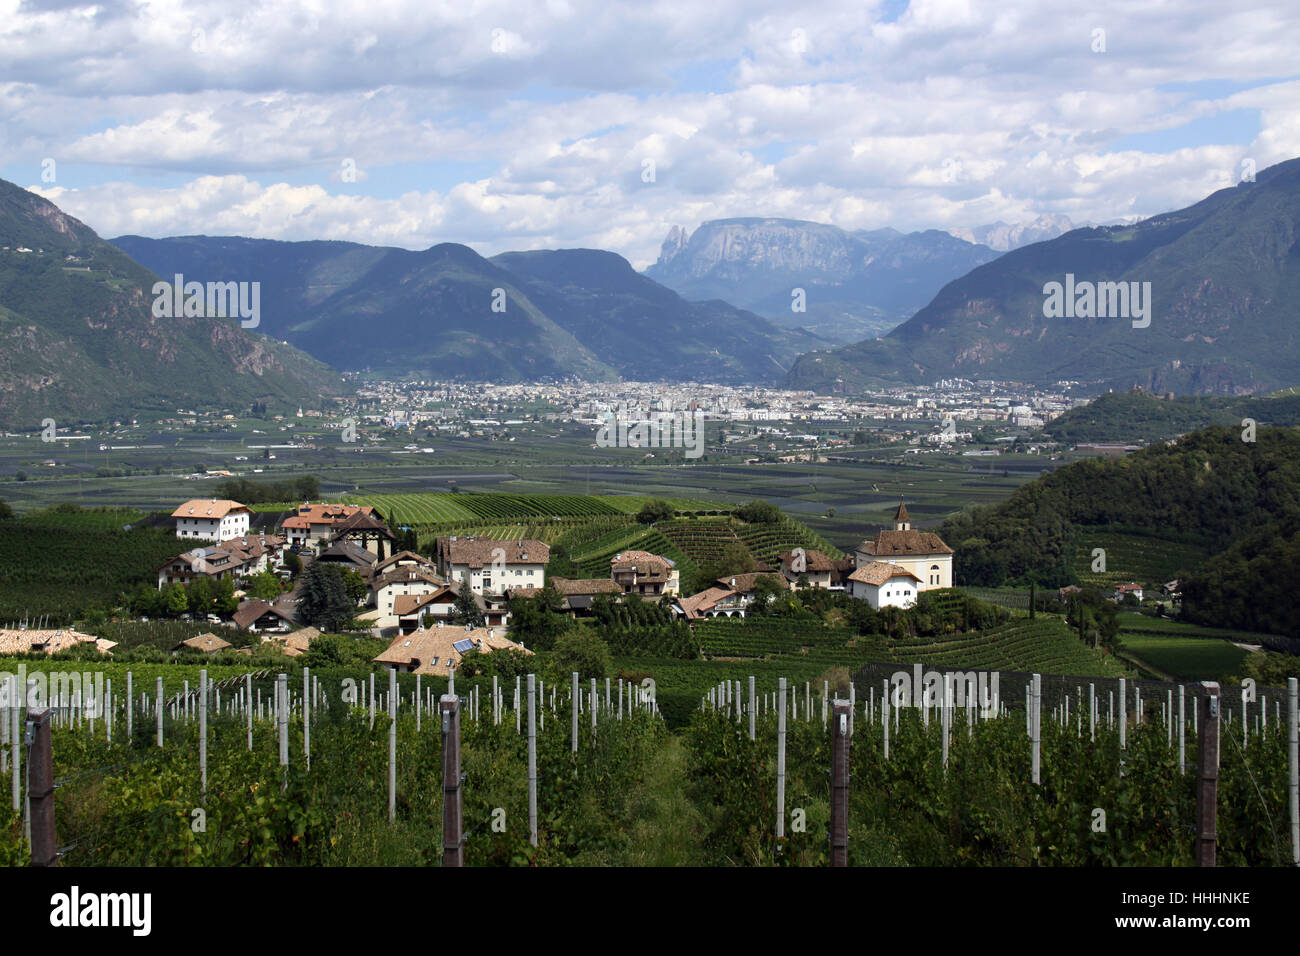 Le tyrol du Sud, de la viticulture, cité, ville, tourisme, dolomites, Alpes, Tyrol du sud, Banque D'Images